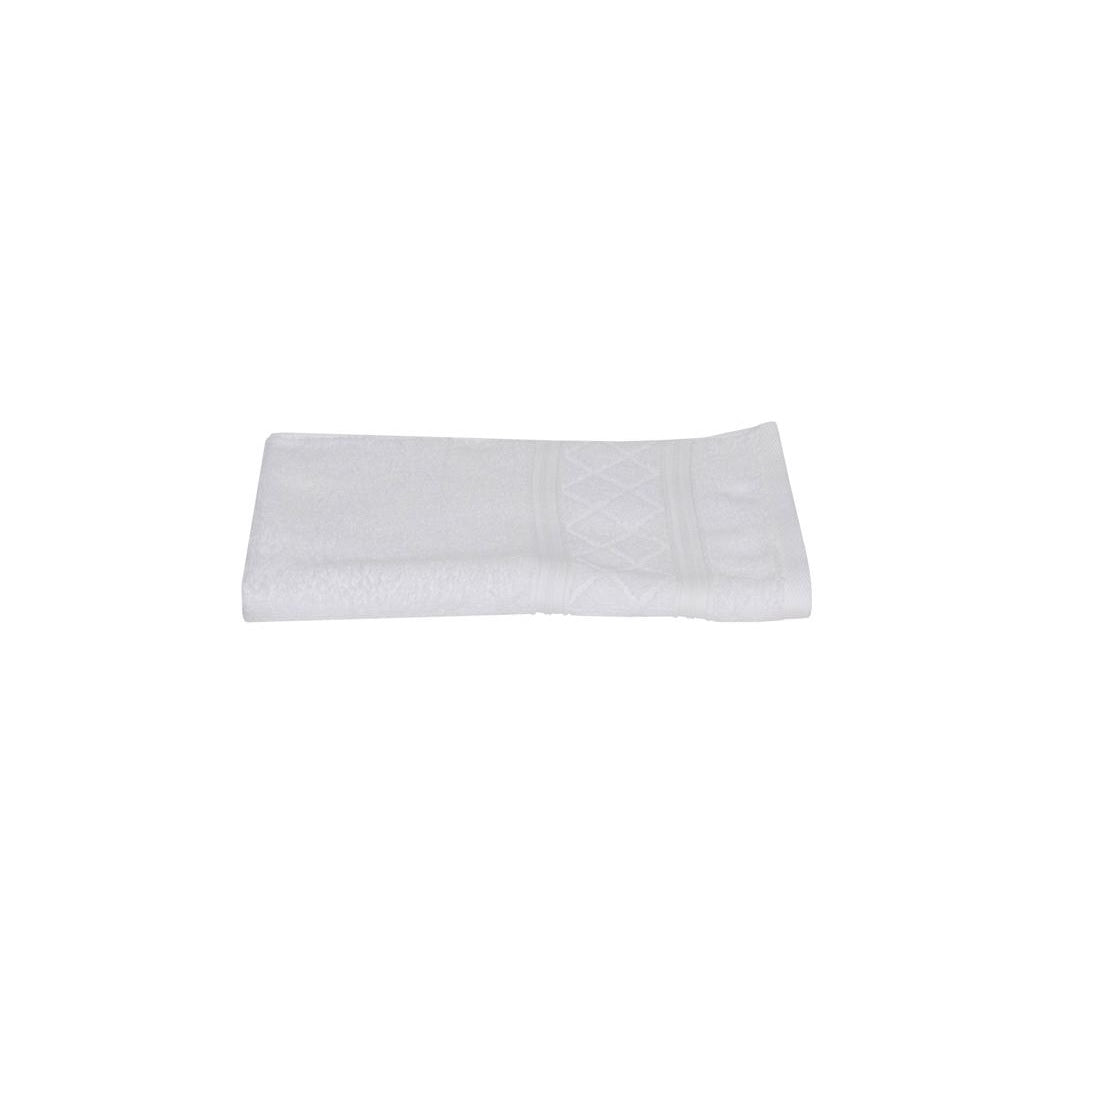 Sttelli RAT-110-WH Radiance Hand Towel, White, Cotton